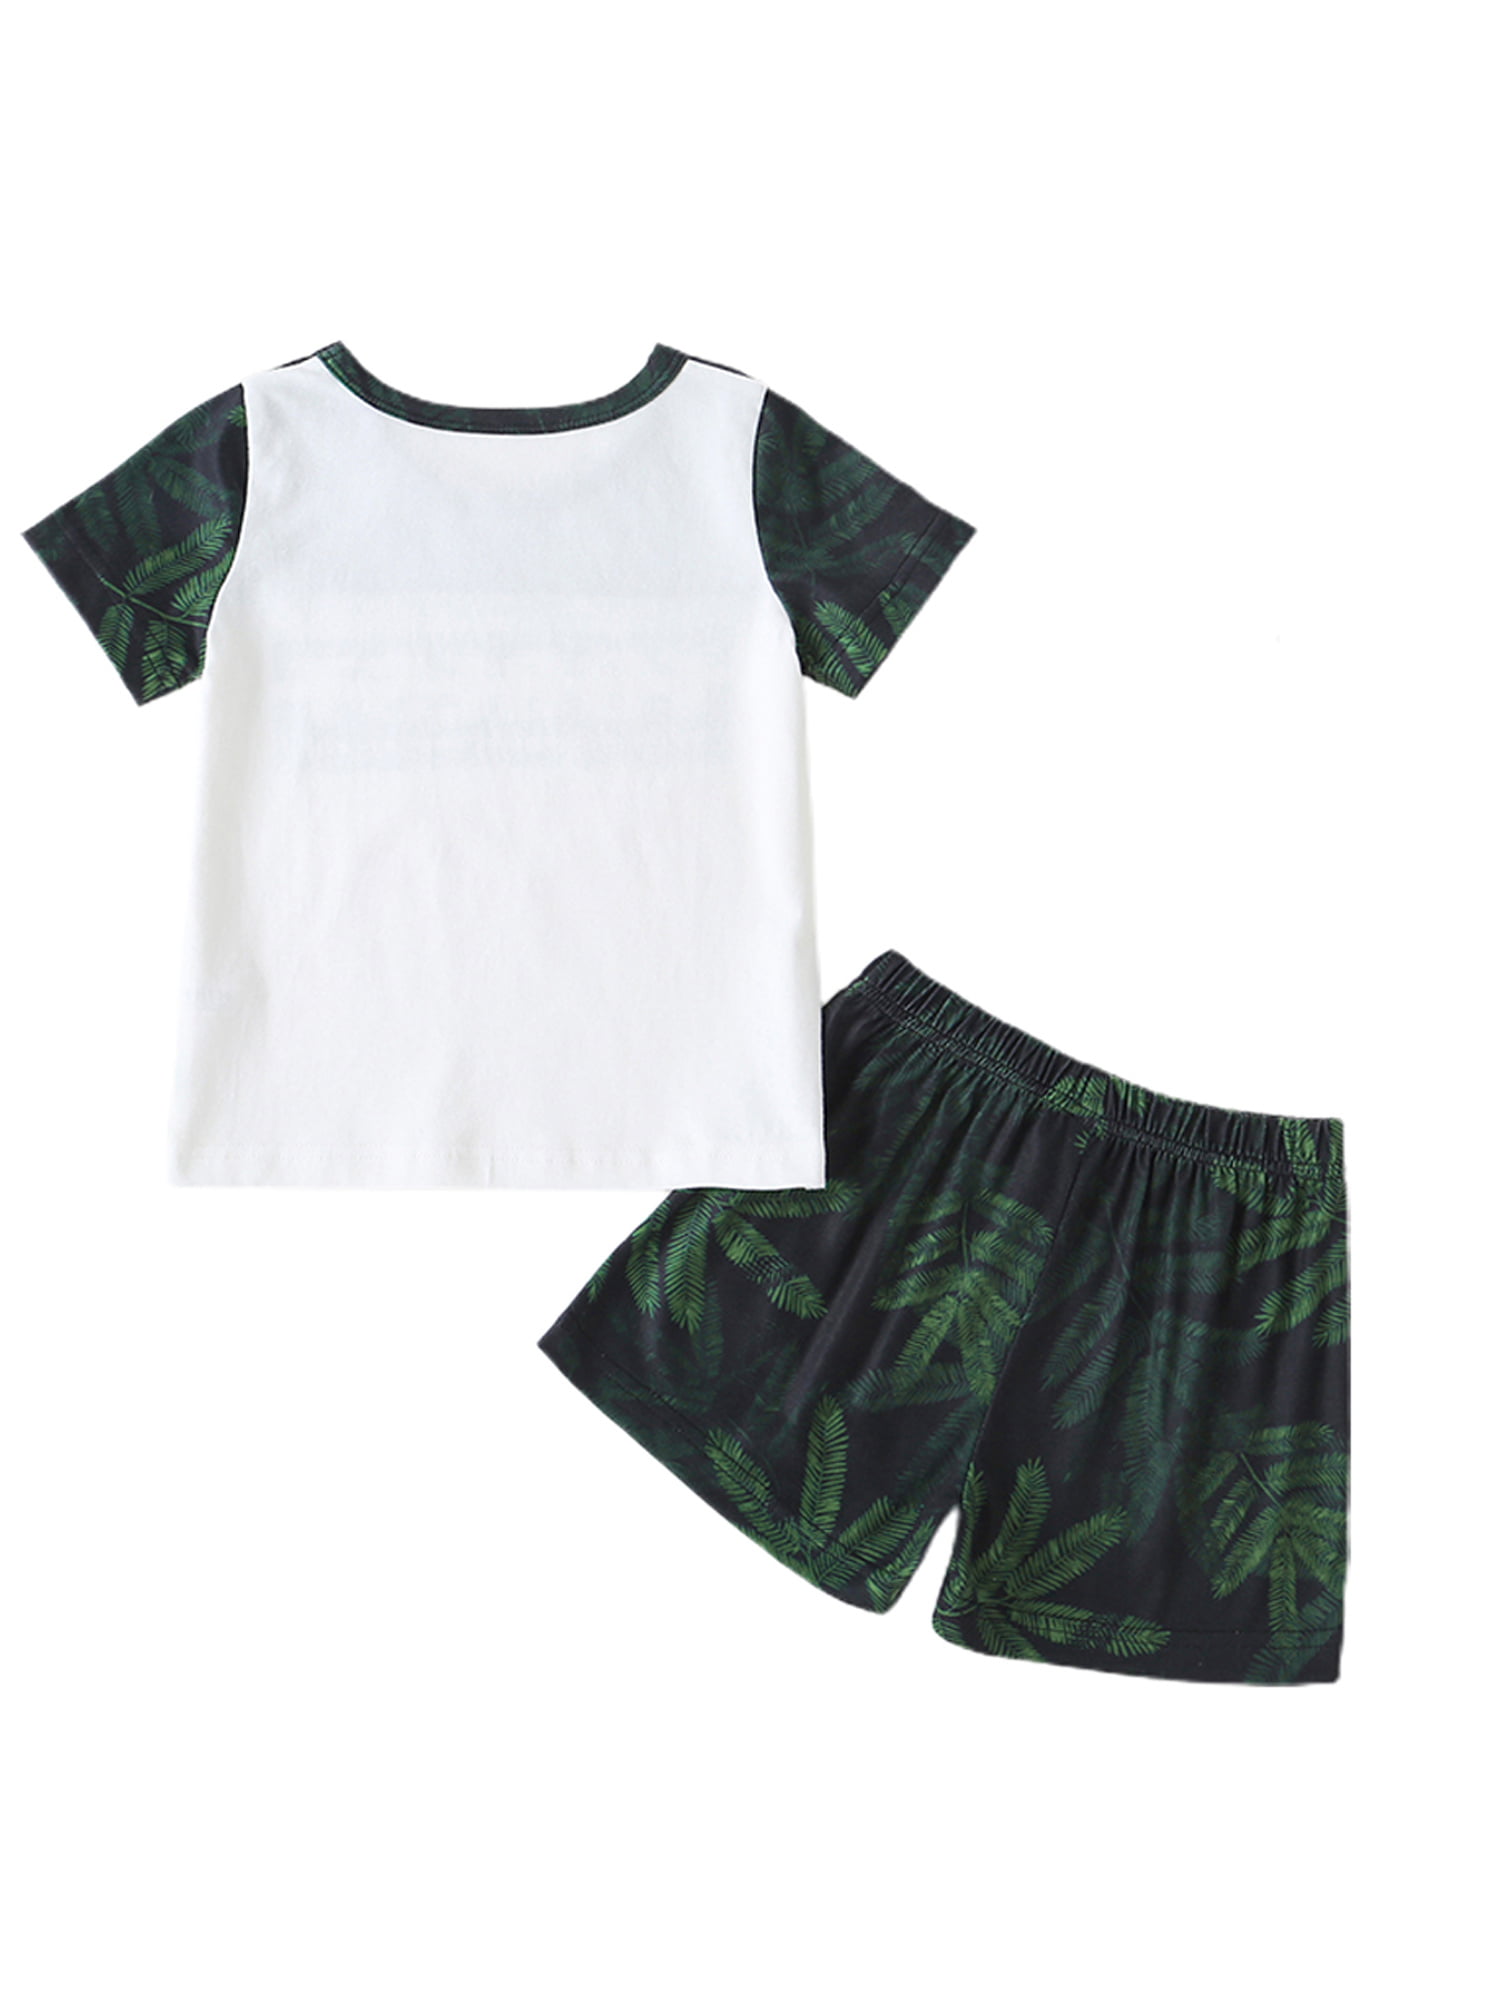 Kids Girl Boy Short Sleeve Round Neck T-Shirt and Shorts Loungewear Clothing Set 